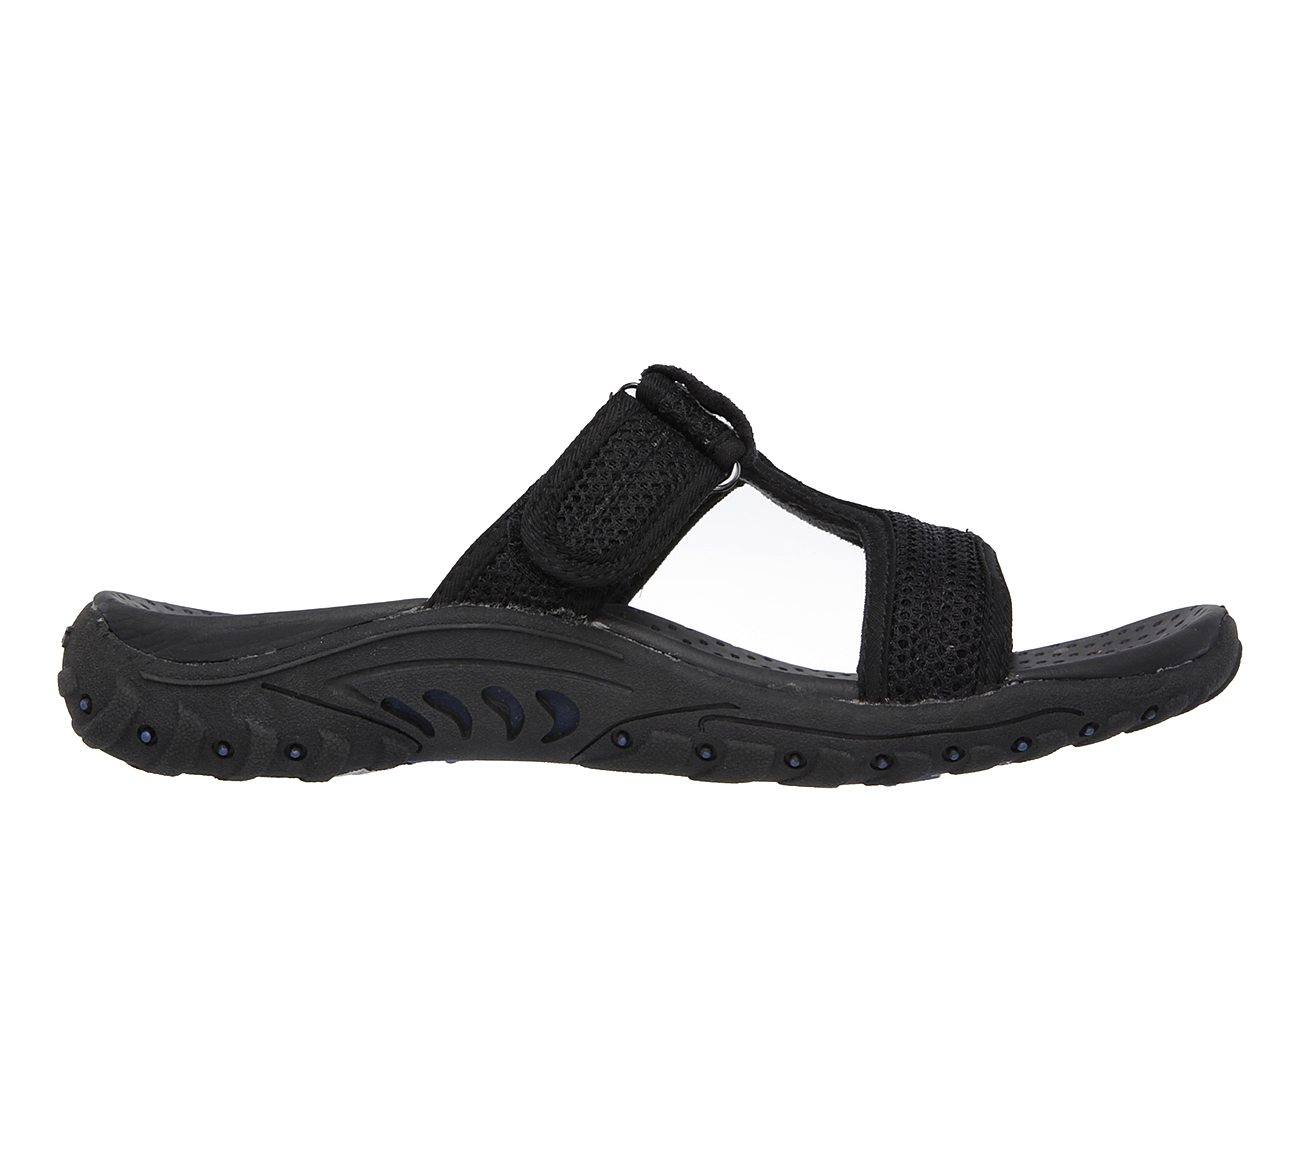 skechers sandals outdoor lifestyle